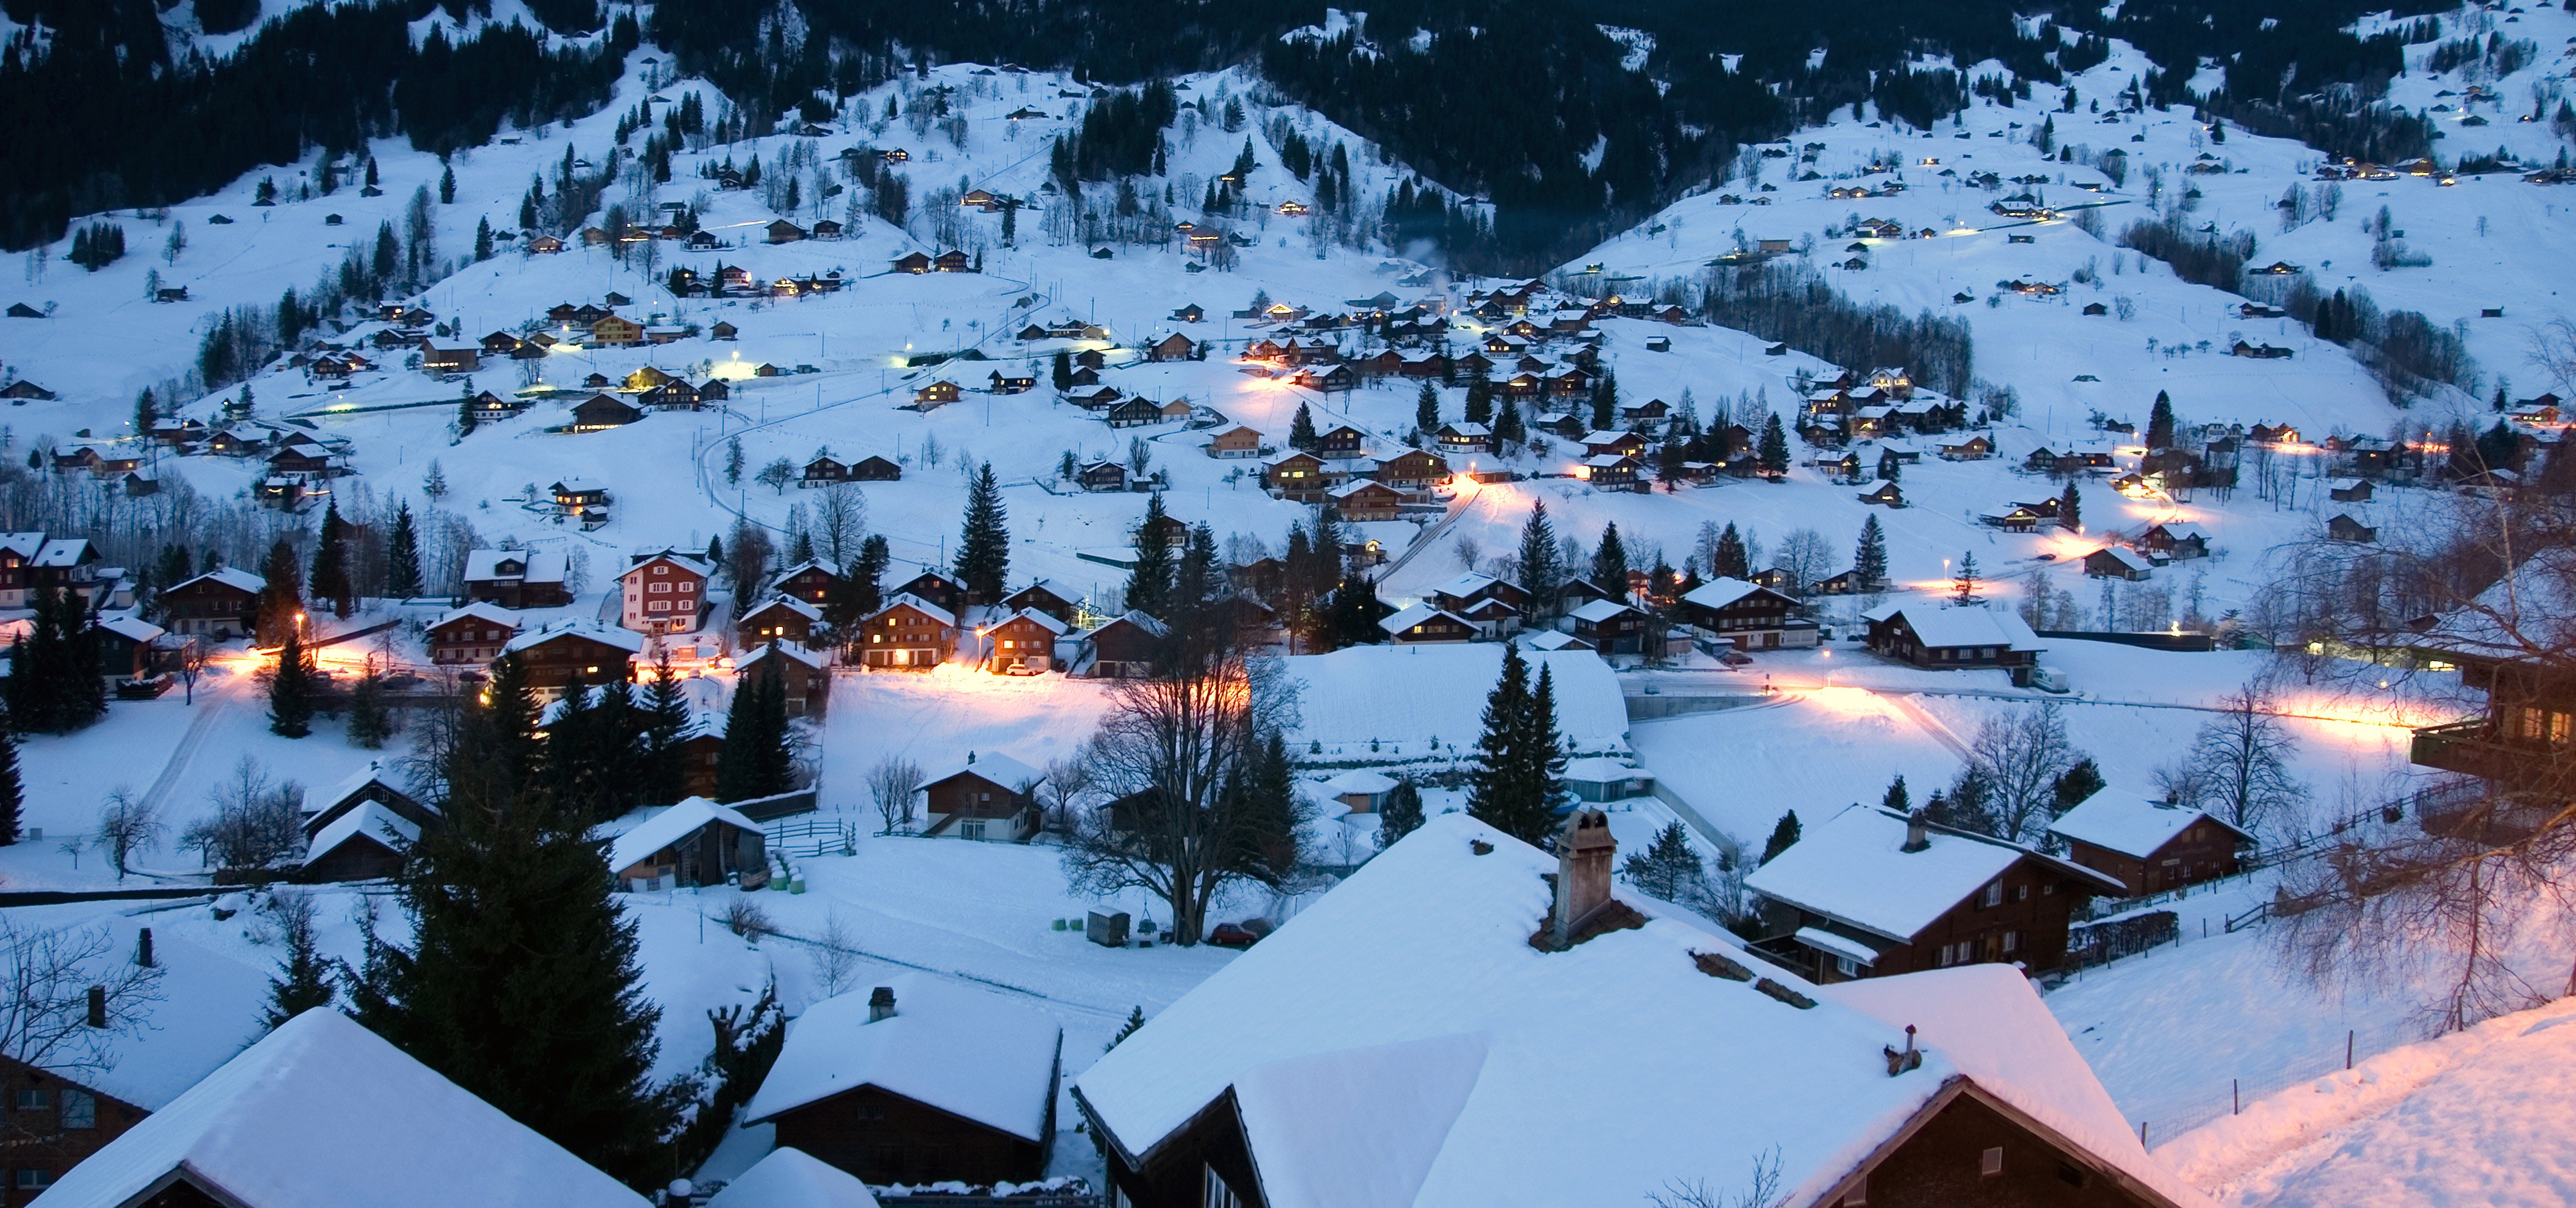 Switzerland: Some of the Best Ski Resorts in Europe - News - Investors